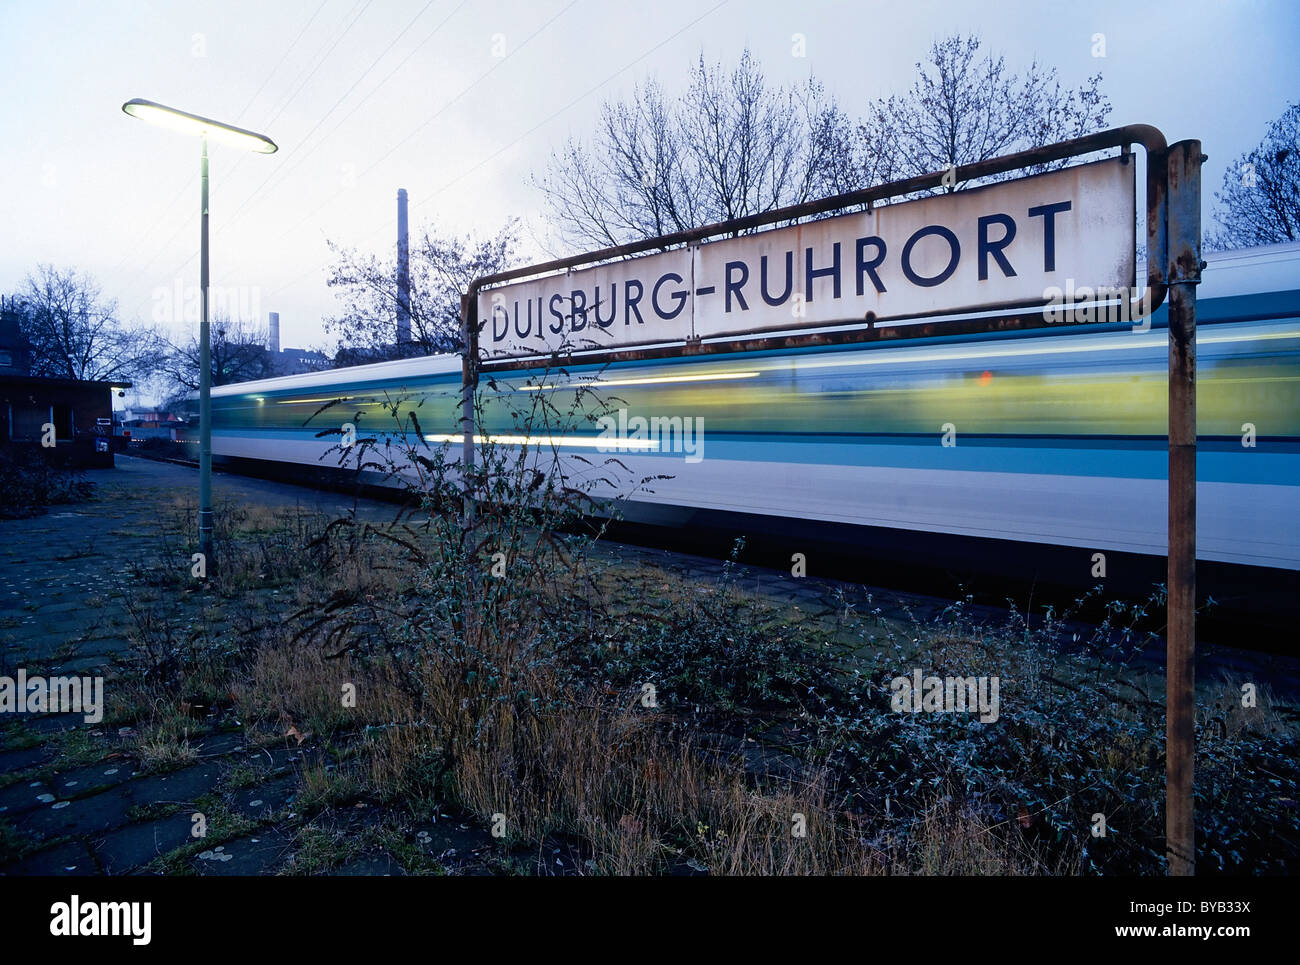 Plataforma sobredimensionado, pasando de tren, estación de tren suburbano Duisburg-Ruhrort, Renania del Norte-Westfalia, Alemania, Europa Foto de stock